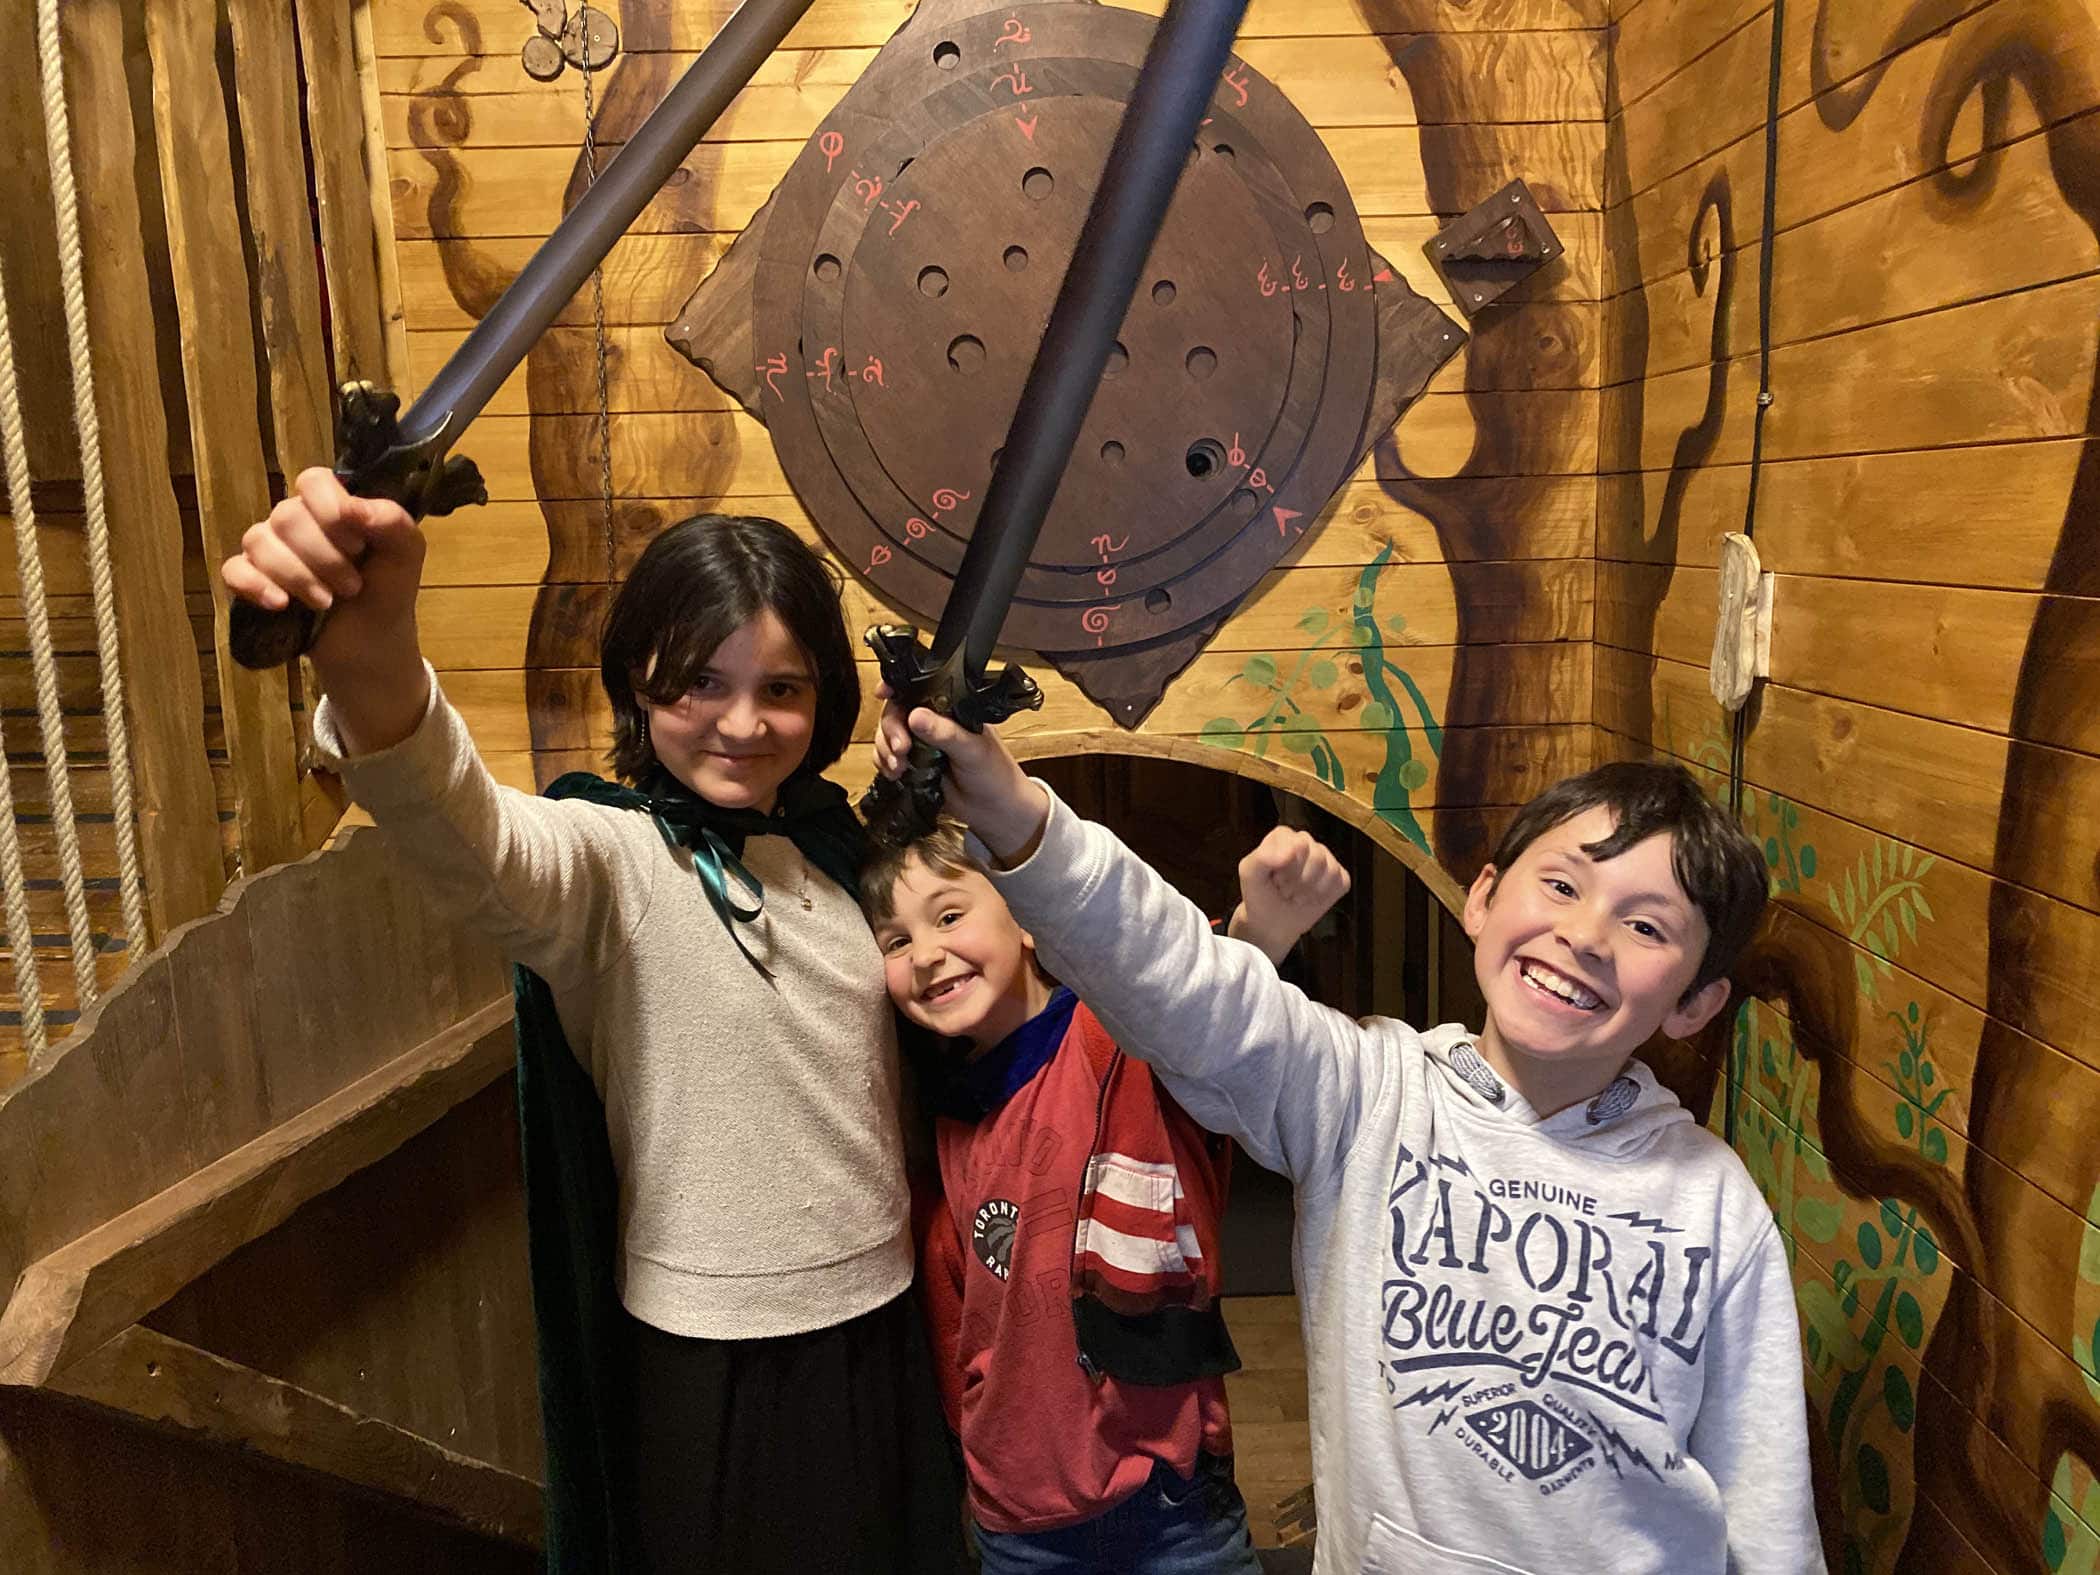 3 enfants de 12 ans, 7 ans et 8 ans prennent la pose pour une photo après avoir gagné lors d'un escape game inspiré du Seigneur des anneaux